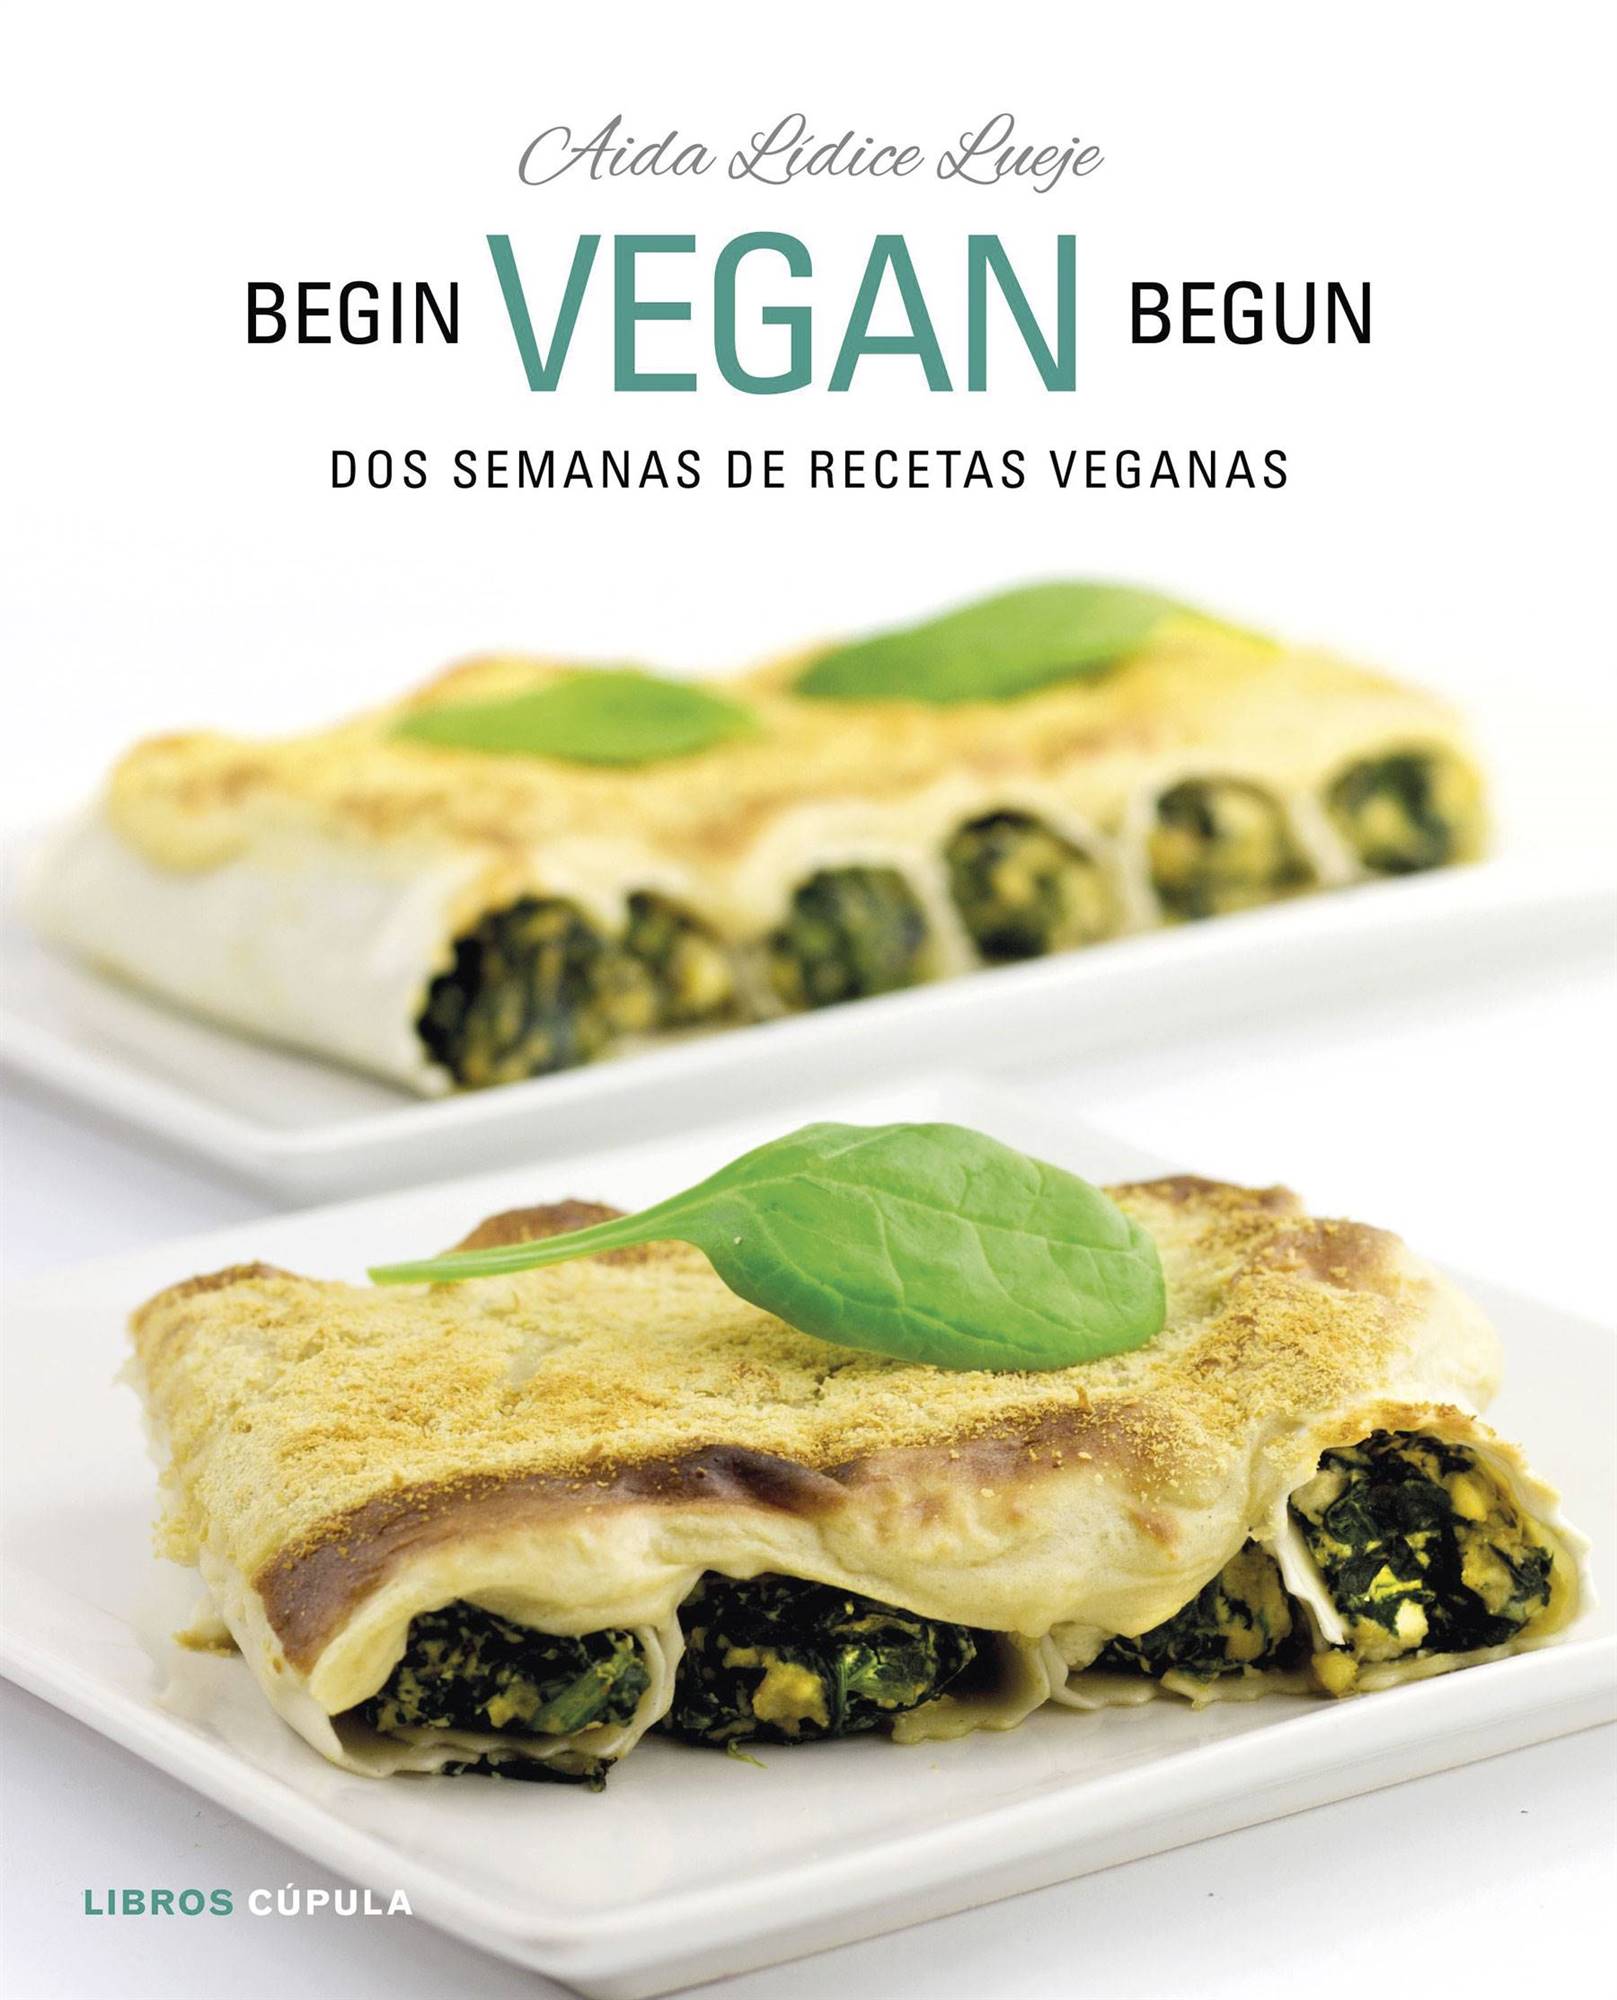 libro-alimentacion-vegana-dos-semanas-begin-vegan-begun